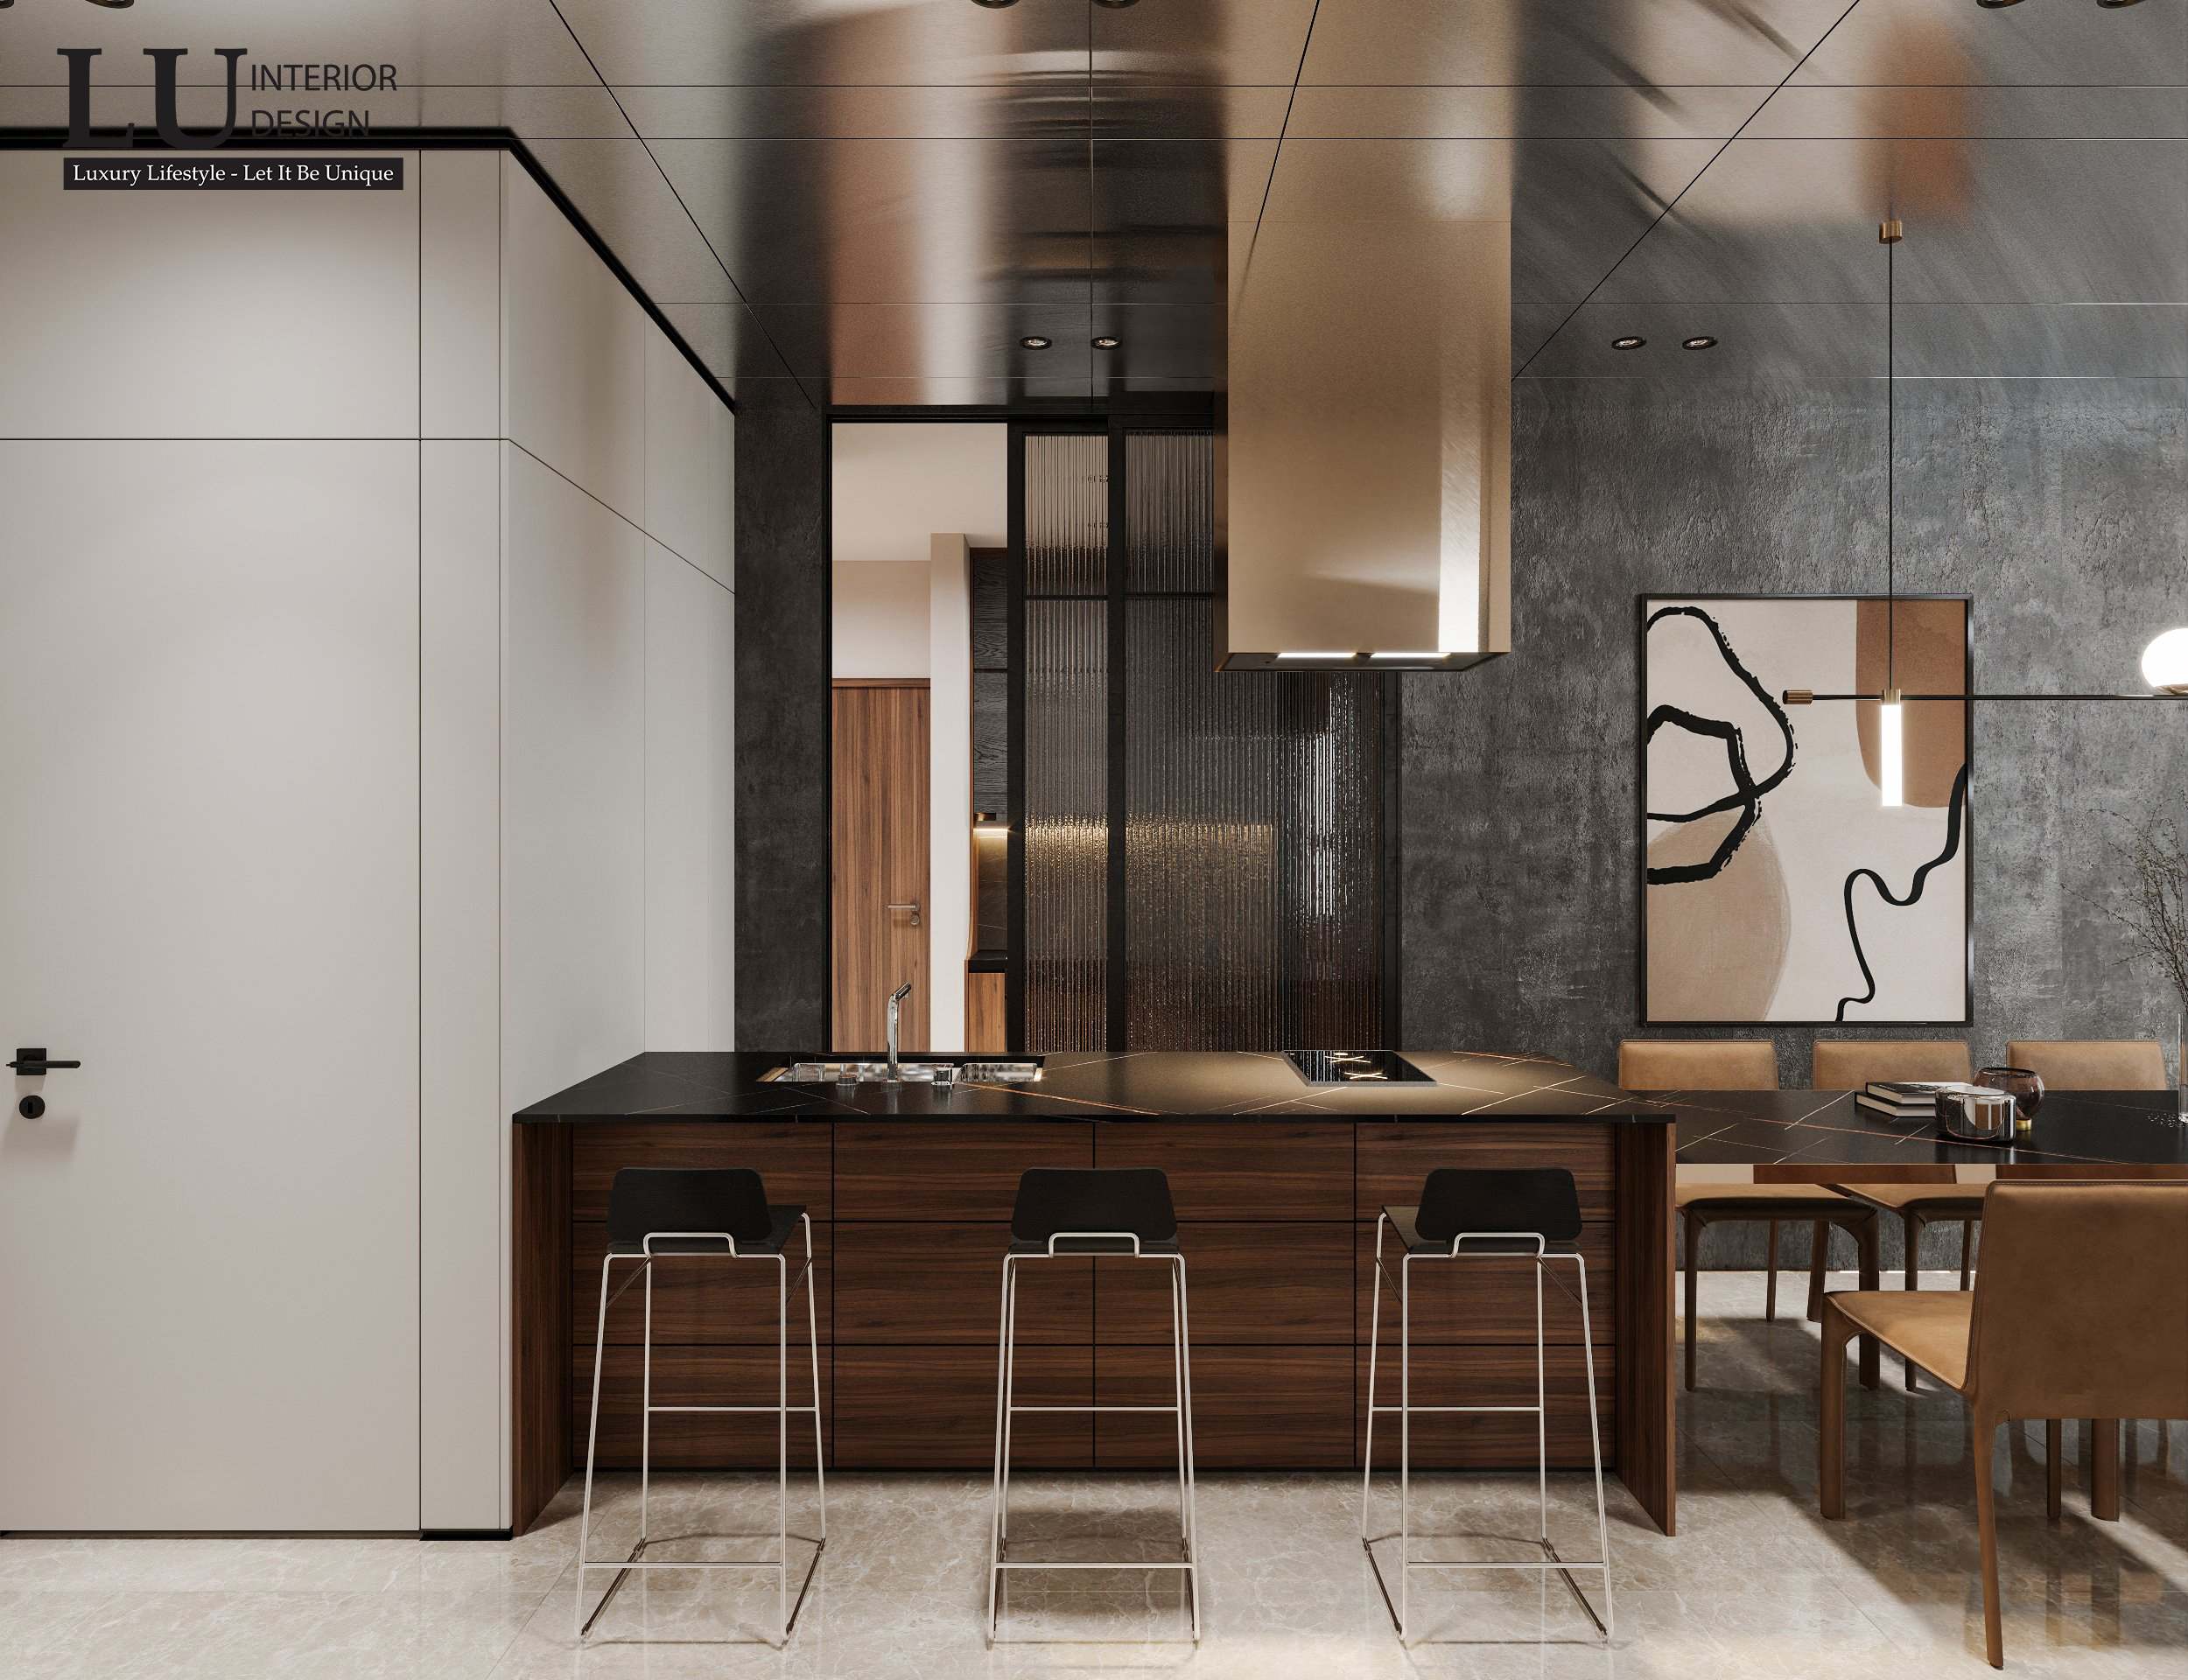 Khu vực bếp nấu được thiết kế nối liền với bàn ăn và phòng khách tạo không gian tiện nghi và ấm cúng.